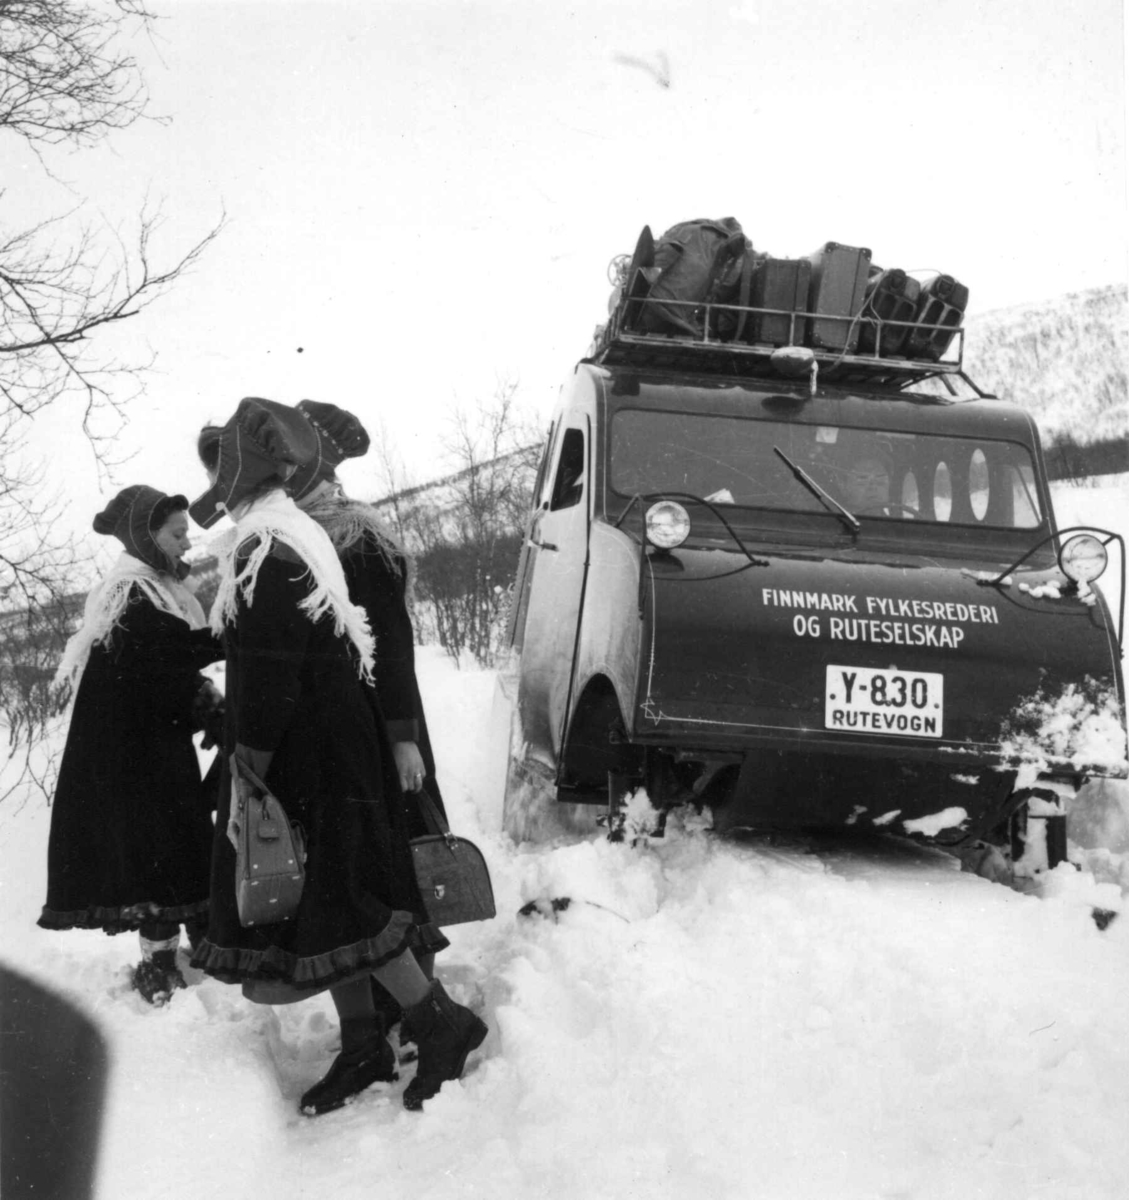 Snowmobile. Snøbil med oppakking på taket sitter fast i snøen,ved siden av står tre samekvinner. Karasjok 1958. Denne beltevogna var registrert Y-830 med undertekst "Rutevogn". Den gikk i rutetrafikk hos Finnmark Fylkesrederi og Ruteselskap (FFR).